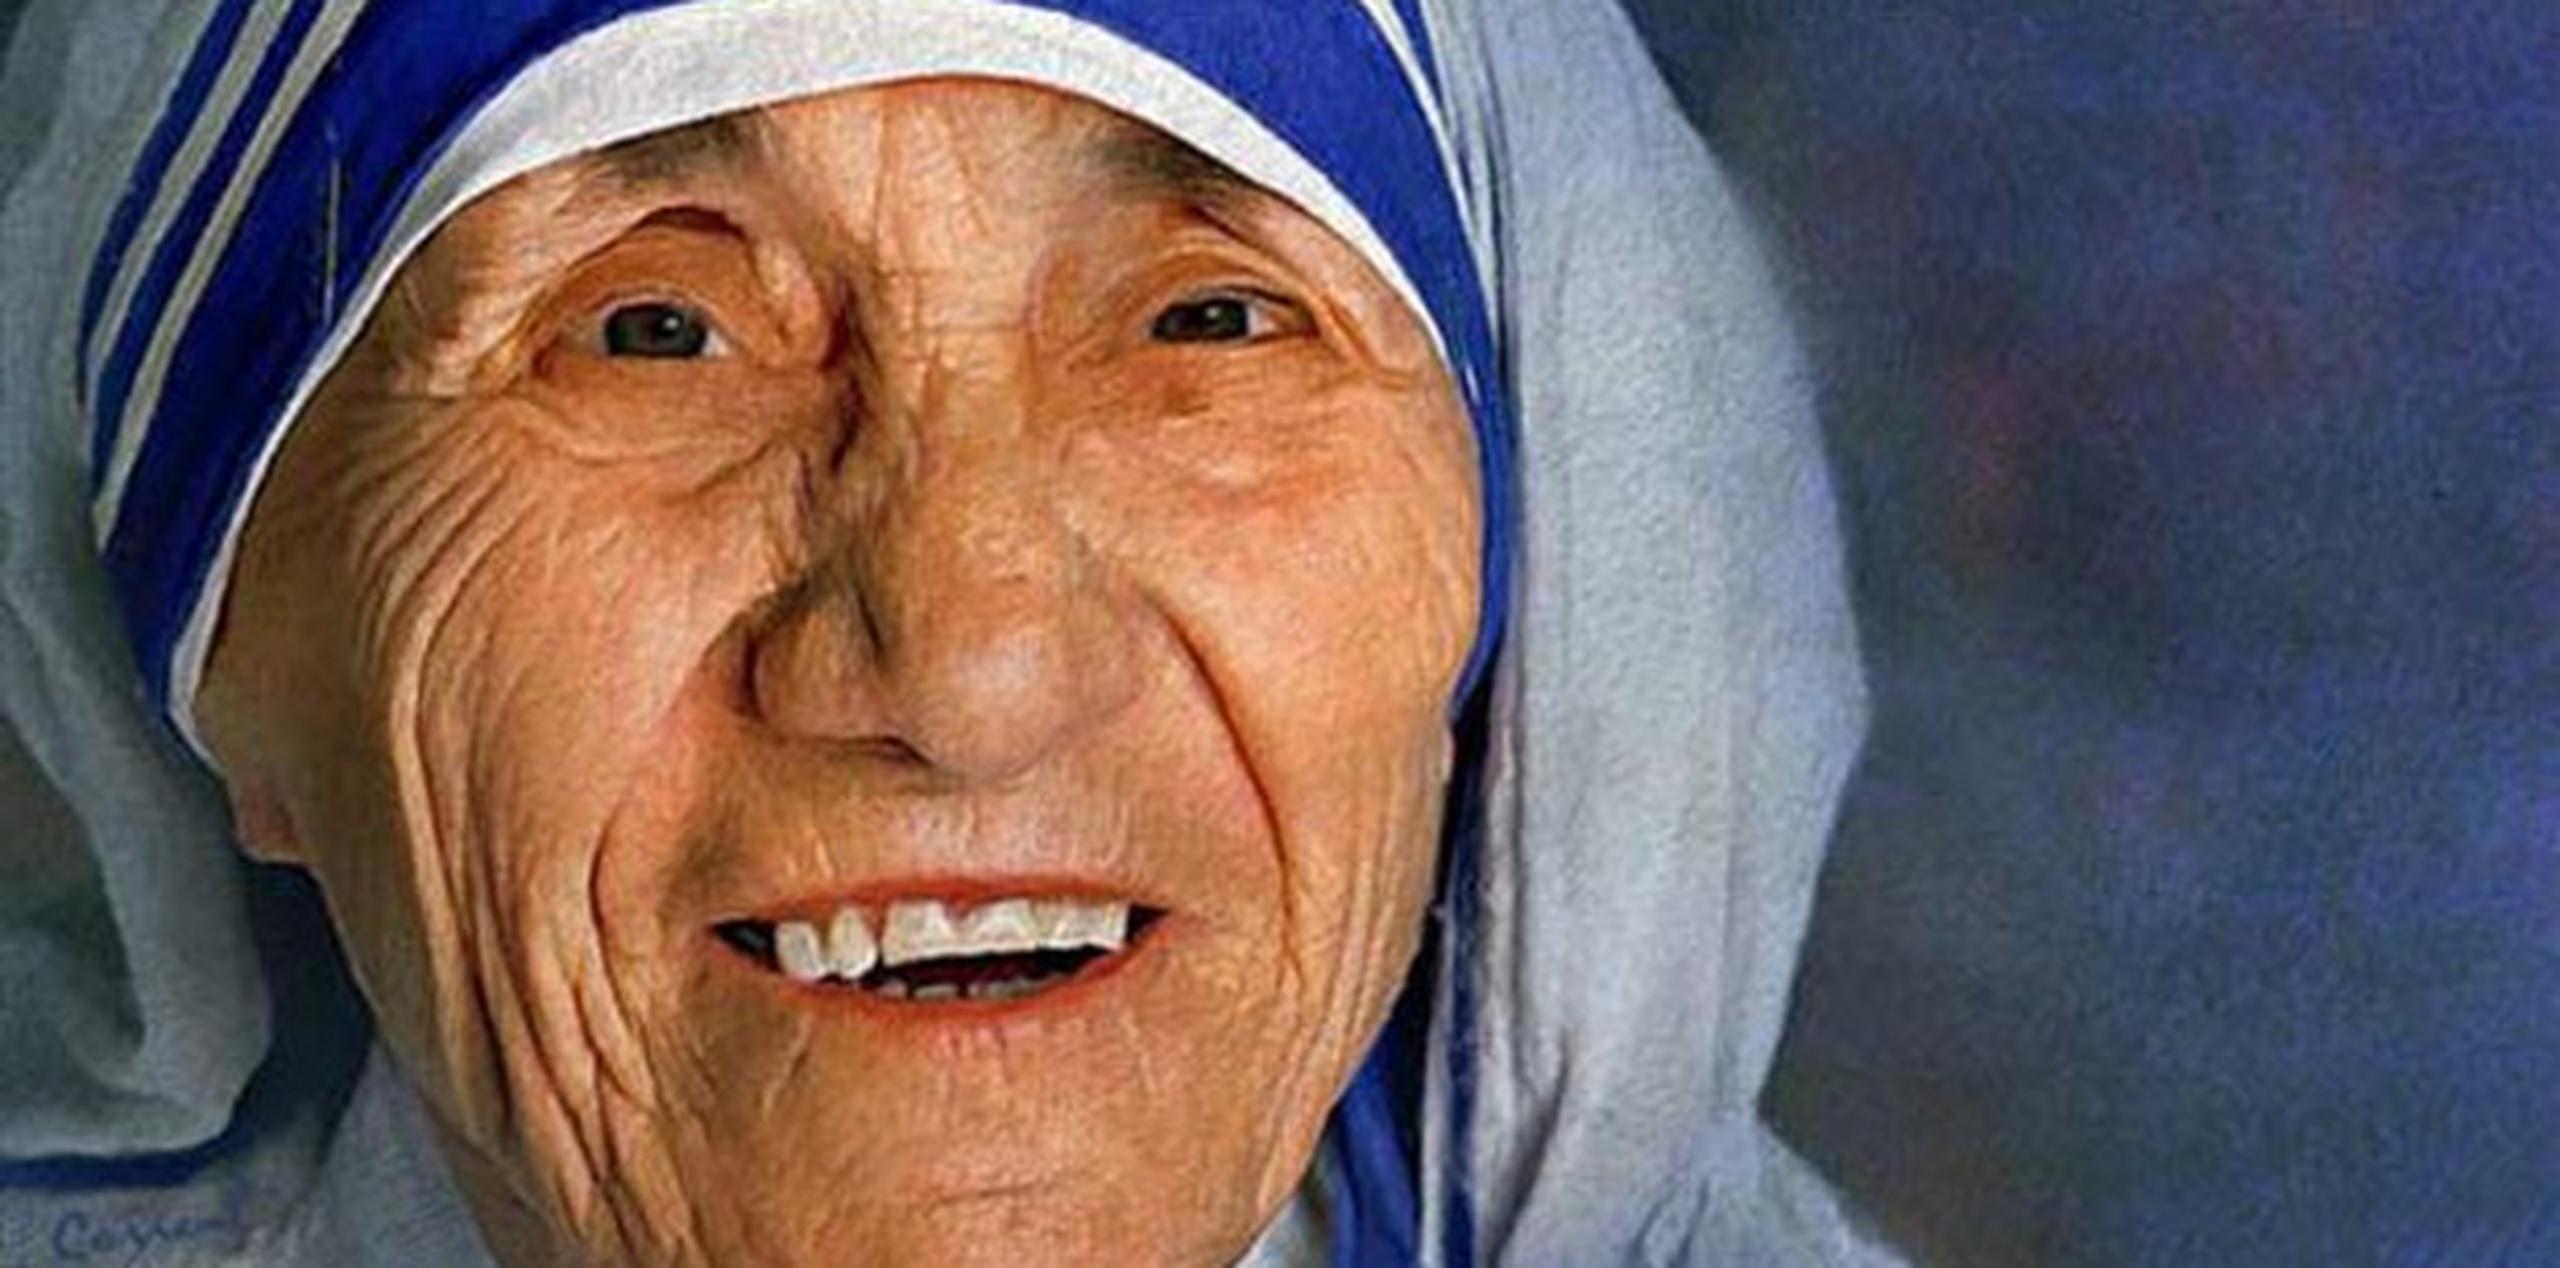 La Madre Teresa, ganadora del Nobel de la Paz, murió el 5 de septiembre de 1997 a los 87 años. (AP)